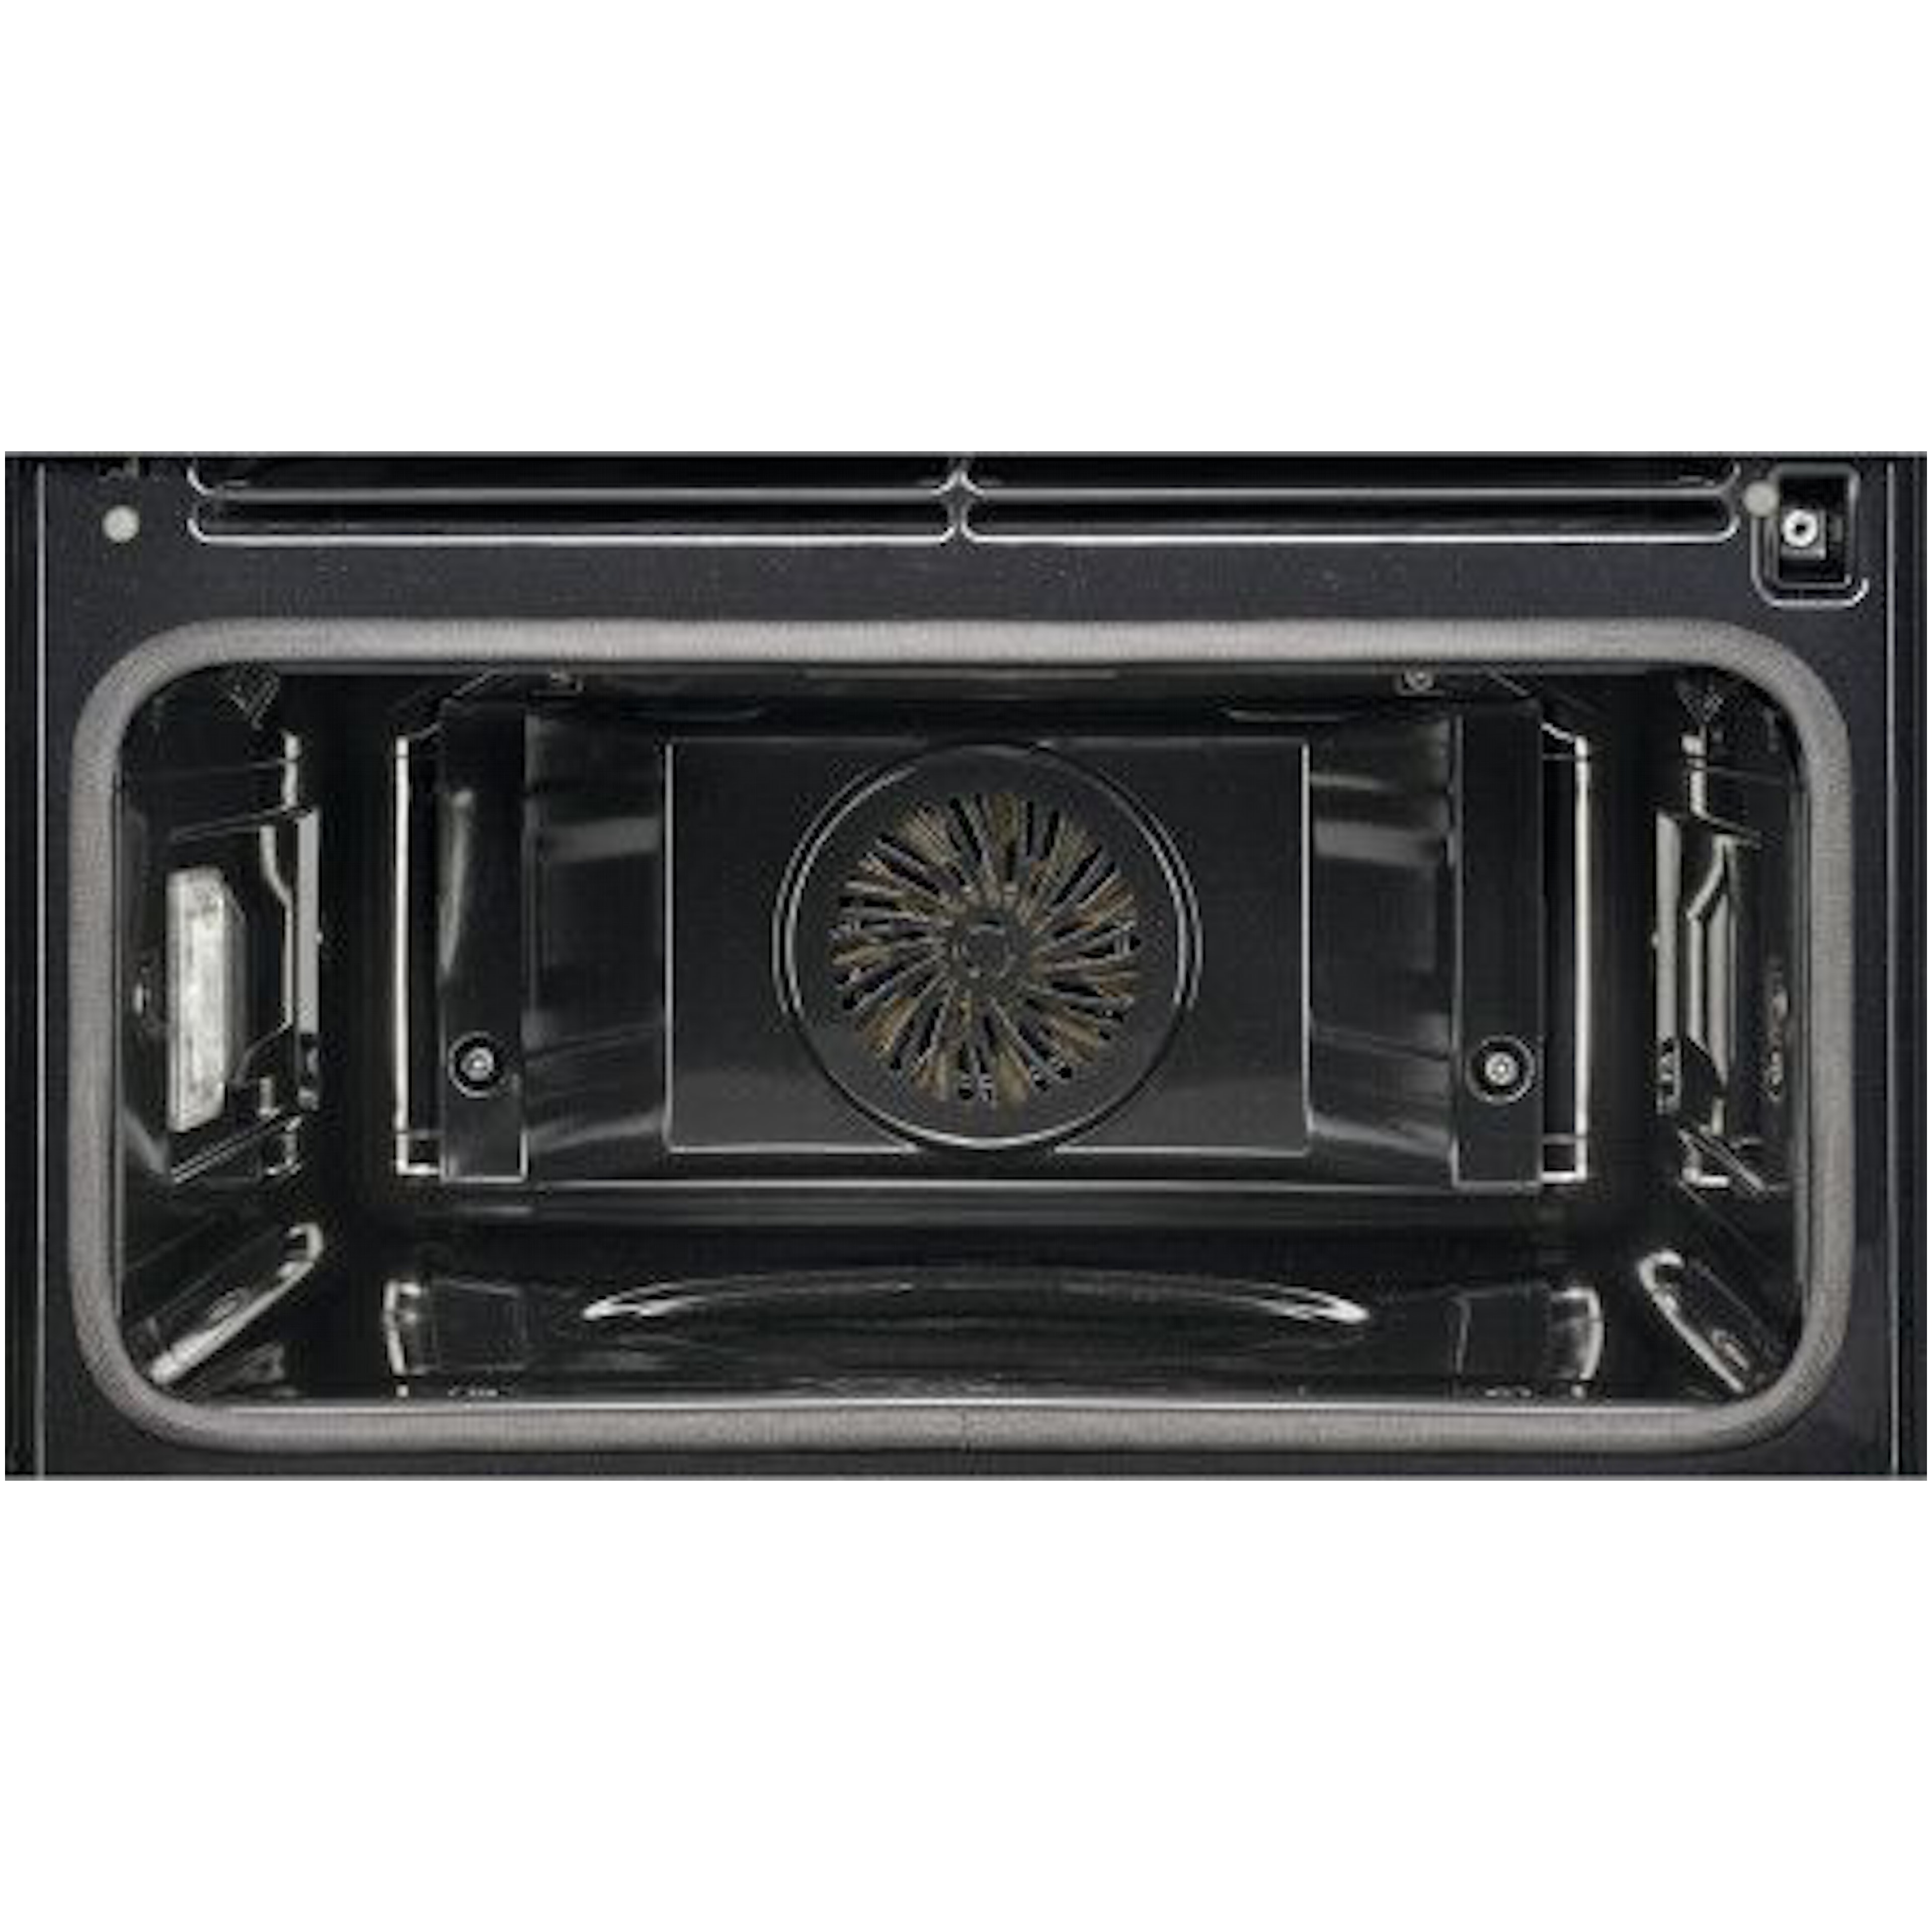 AEG oven inbouw KSE792220B afbeelding 4